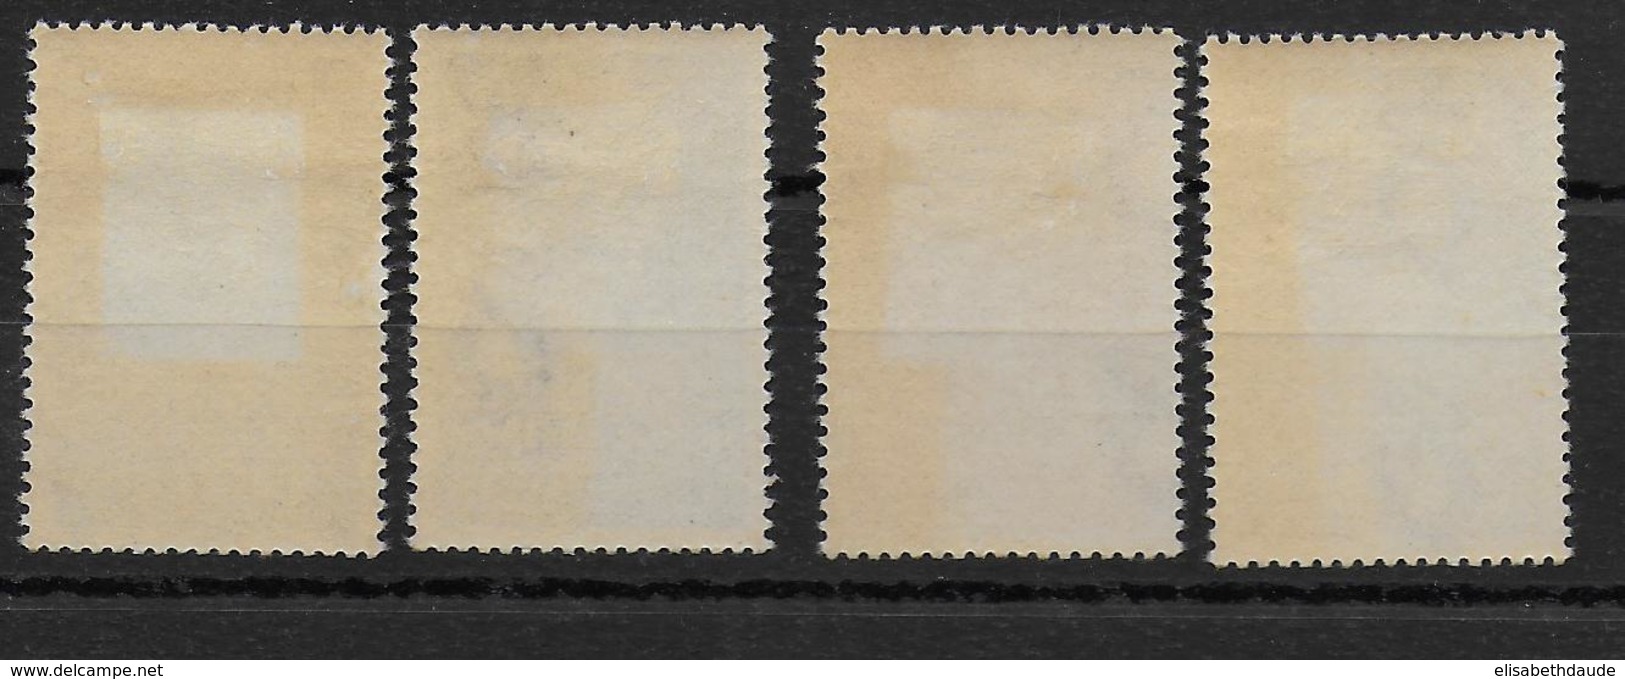 NORGE - 1935 - YVERT N° 164/167 * MH  - COTE = 30 EUR. - Unused Stamps